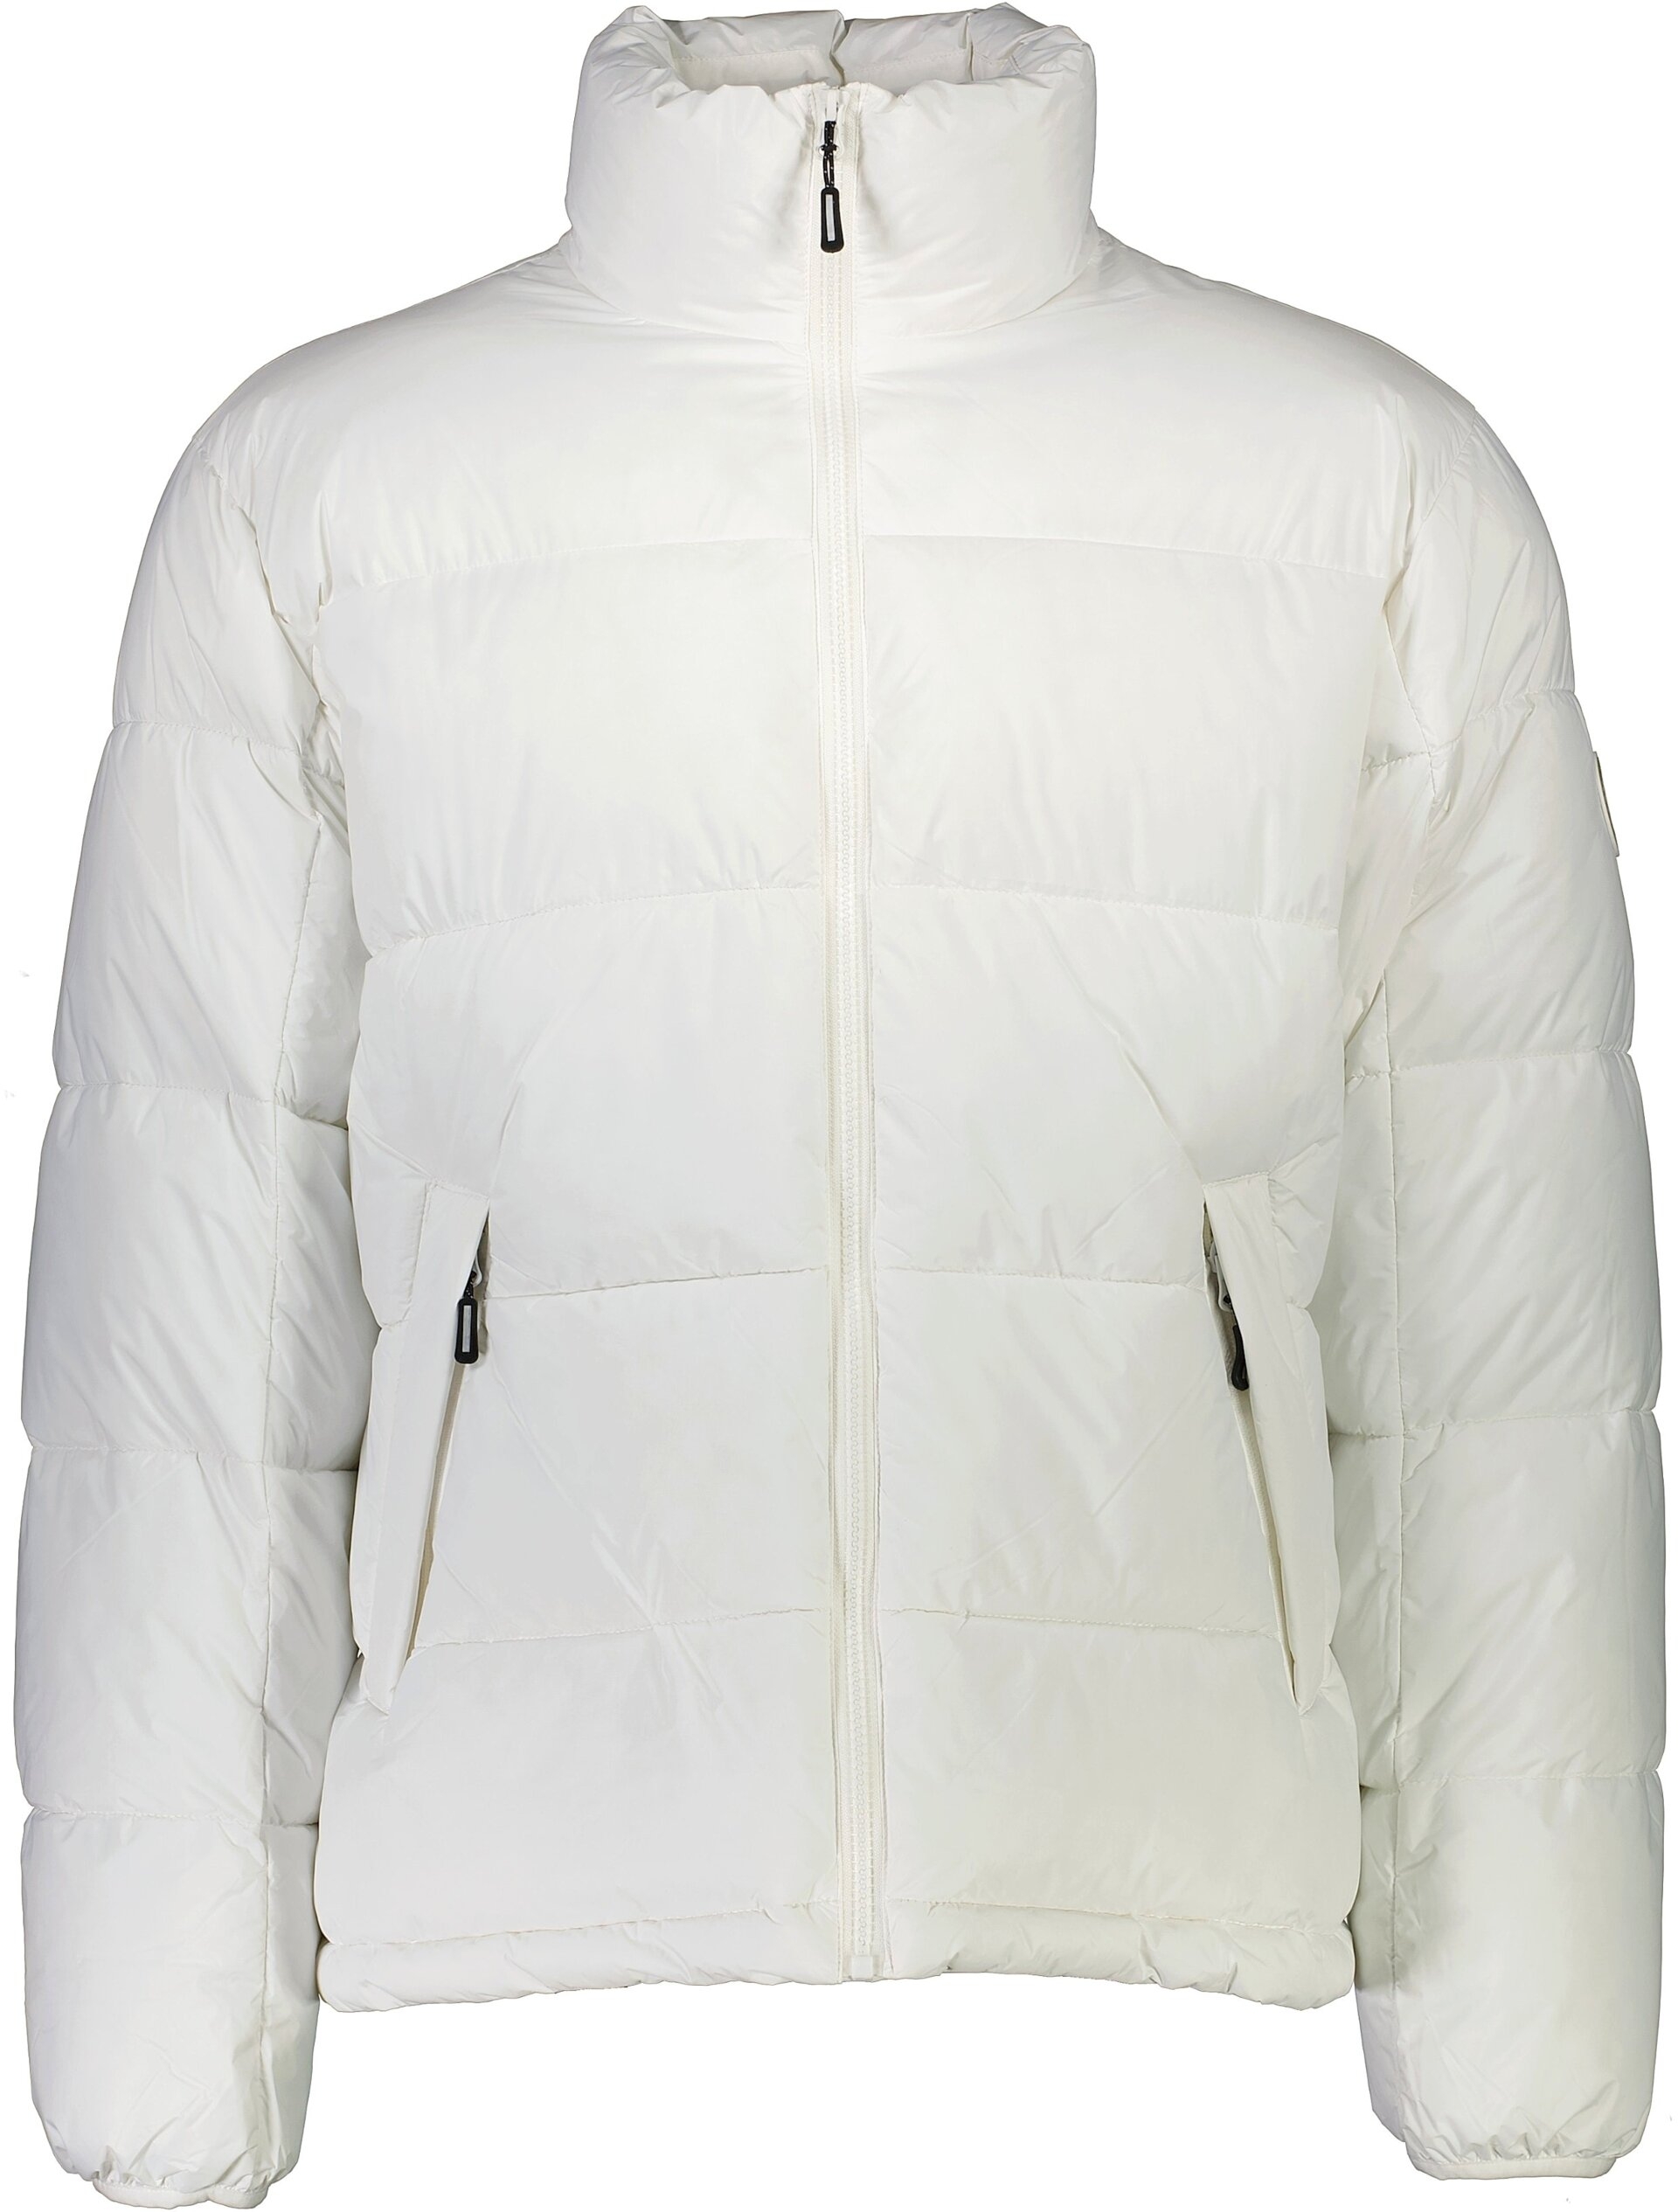 Lindbergh Padded jacket white / white